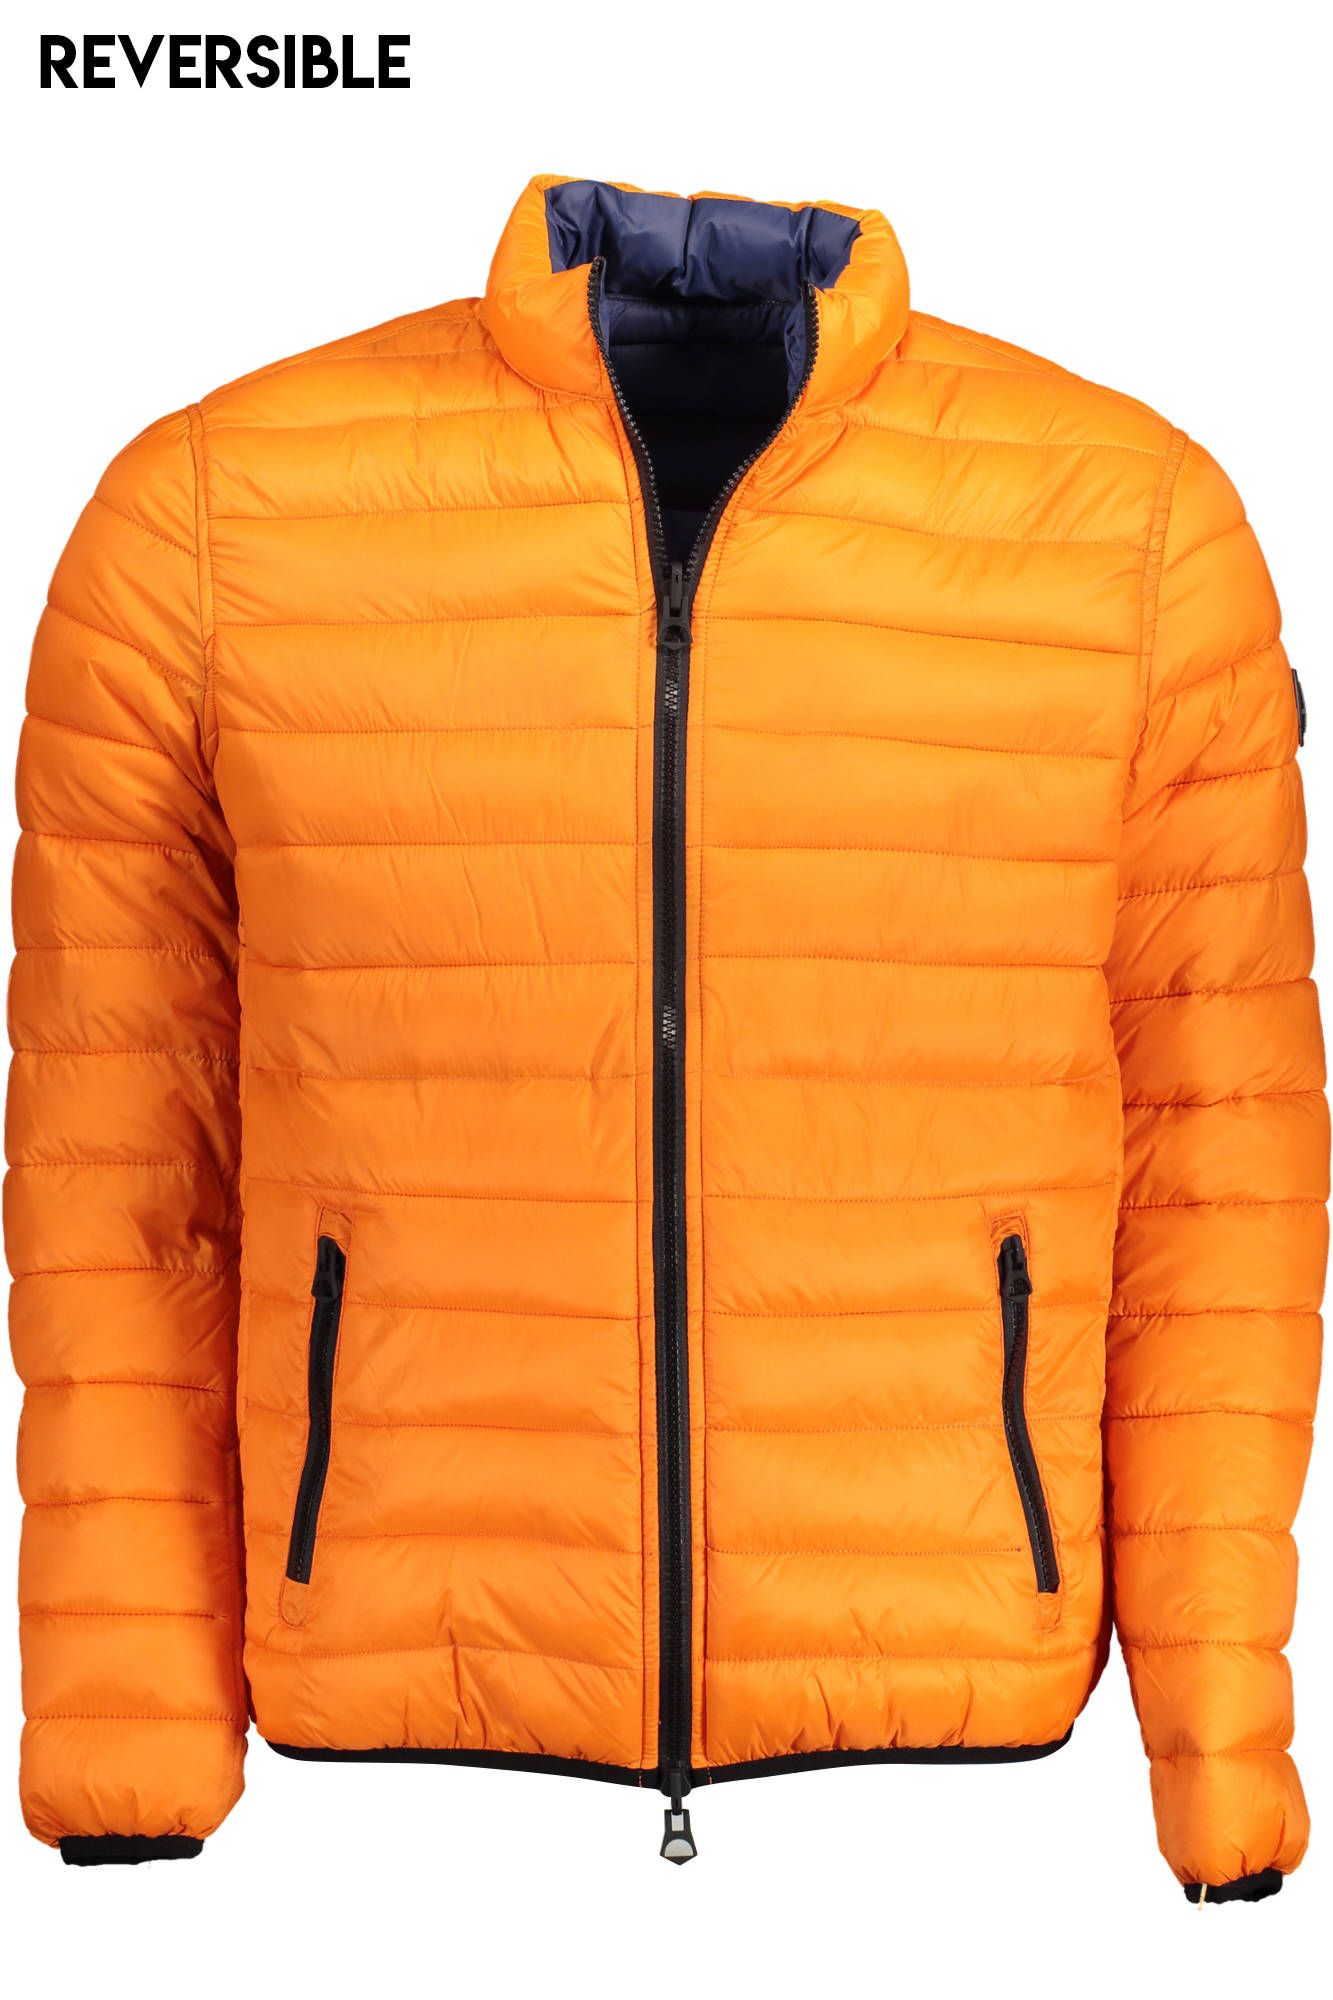 U.S. Polo Assn. Orange Nylon Jacket